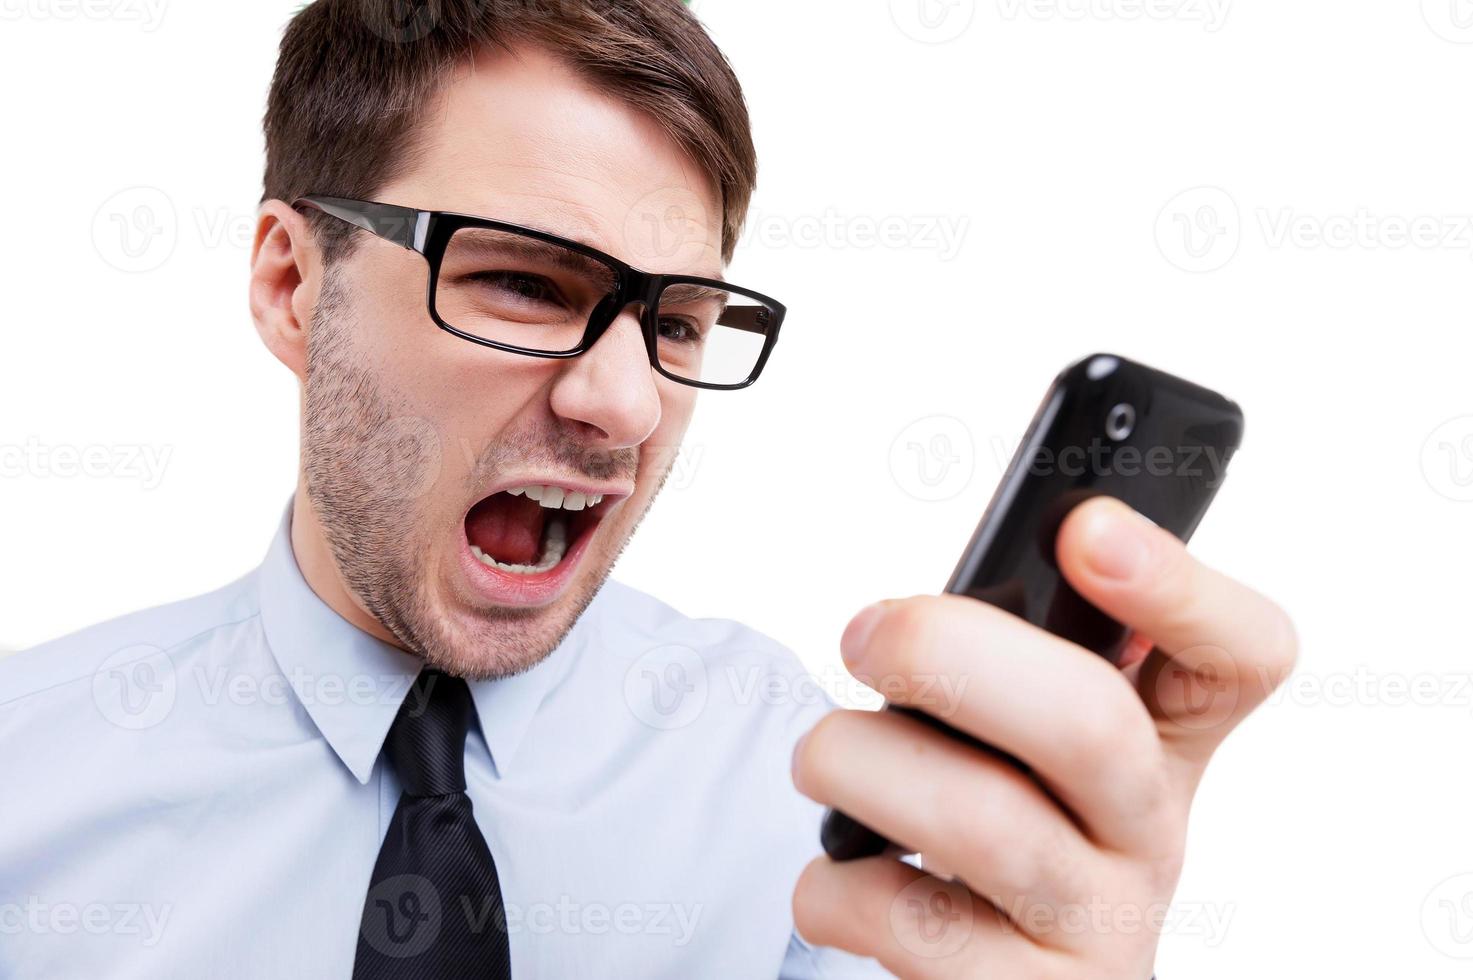 que dia estressante jovem furioso de camisa e gravata gritando no celular em pé isolado no branco foto